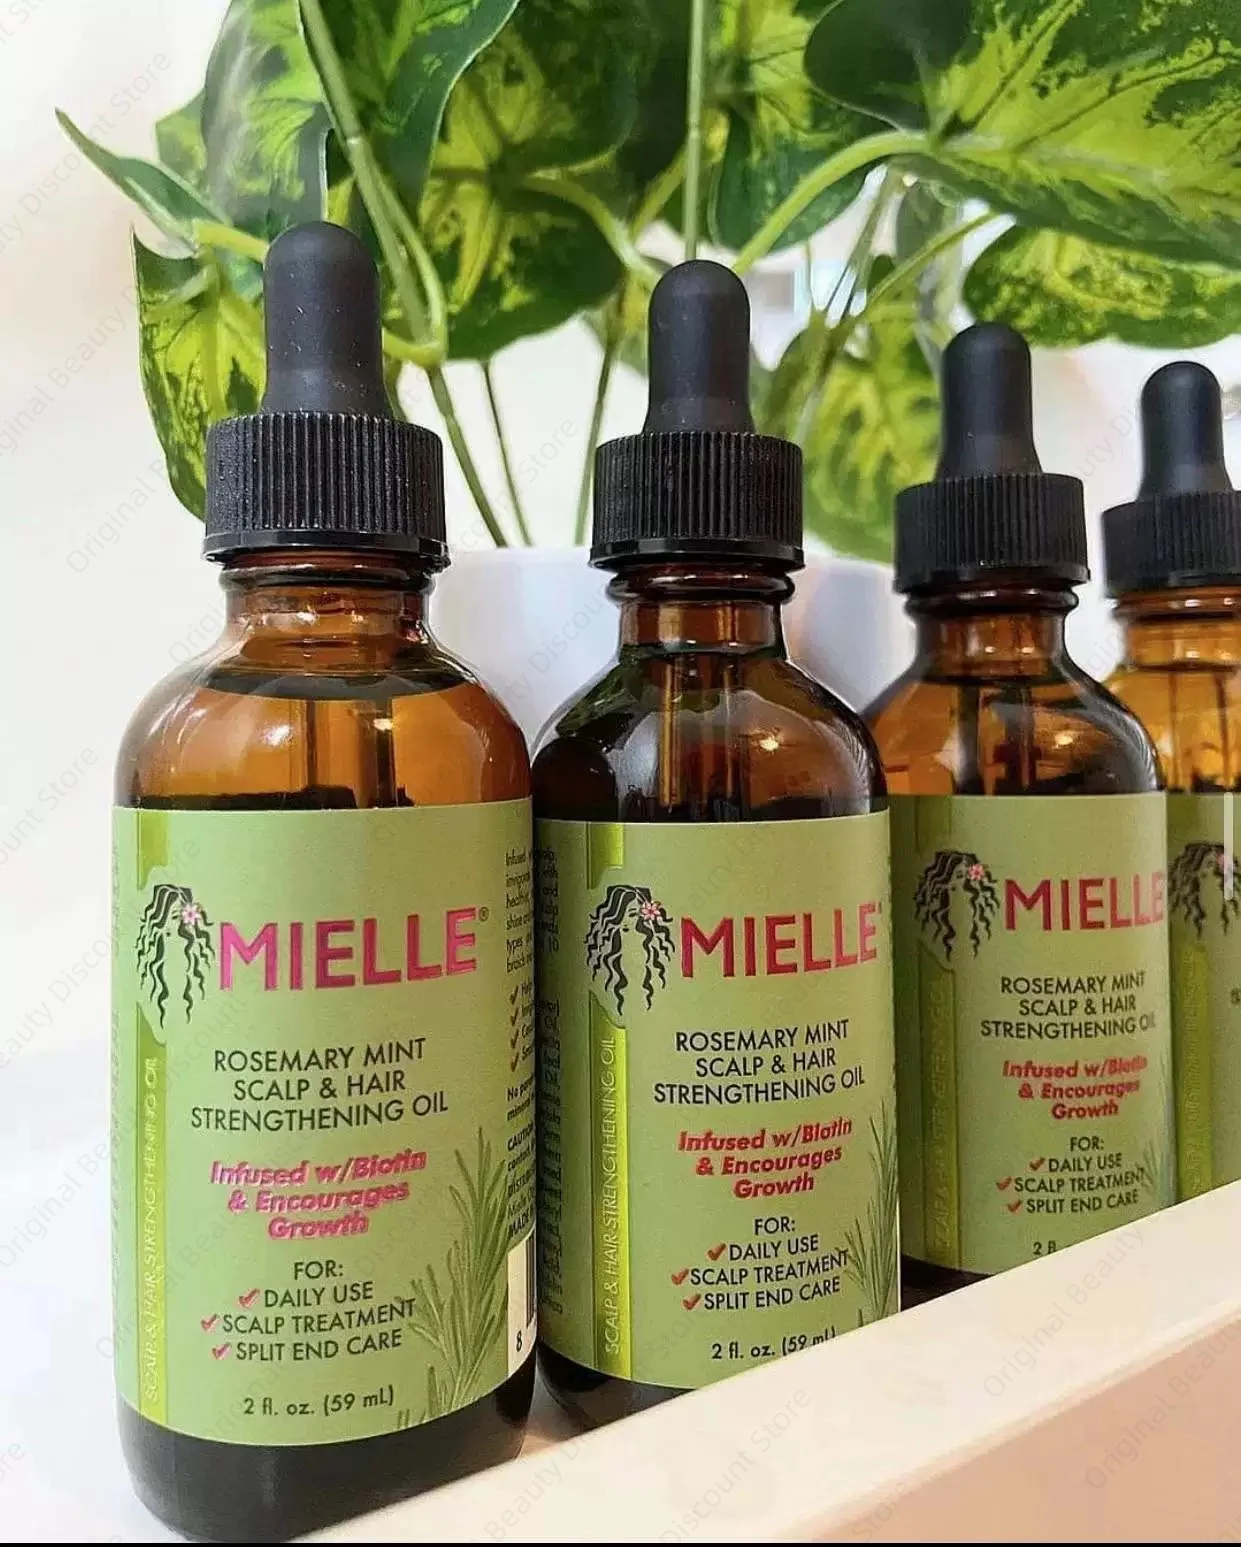 Mielle Rosemary Mint Light Scalp & Hair Strengthening Oil - 2.0 fl oz